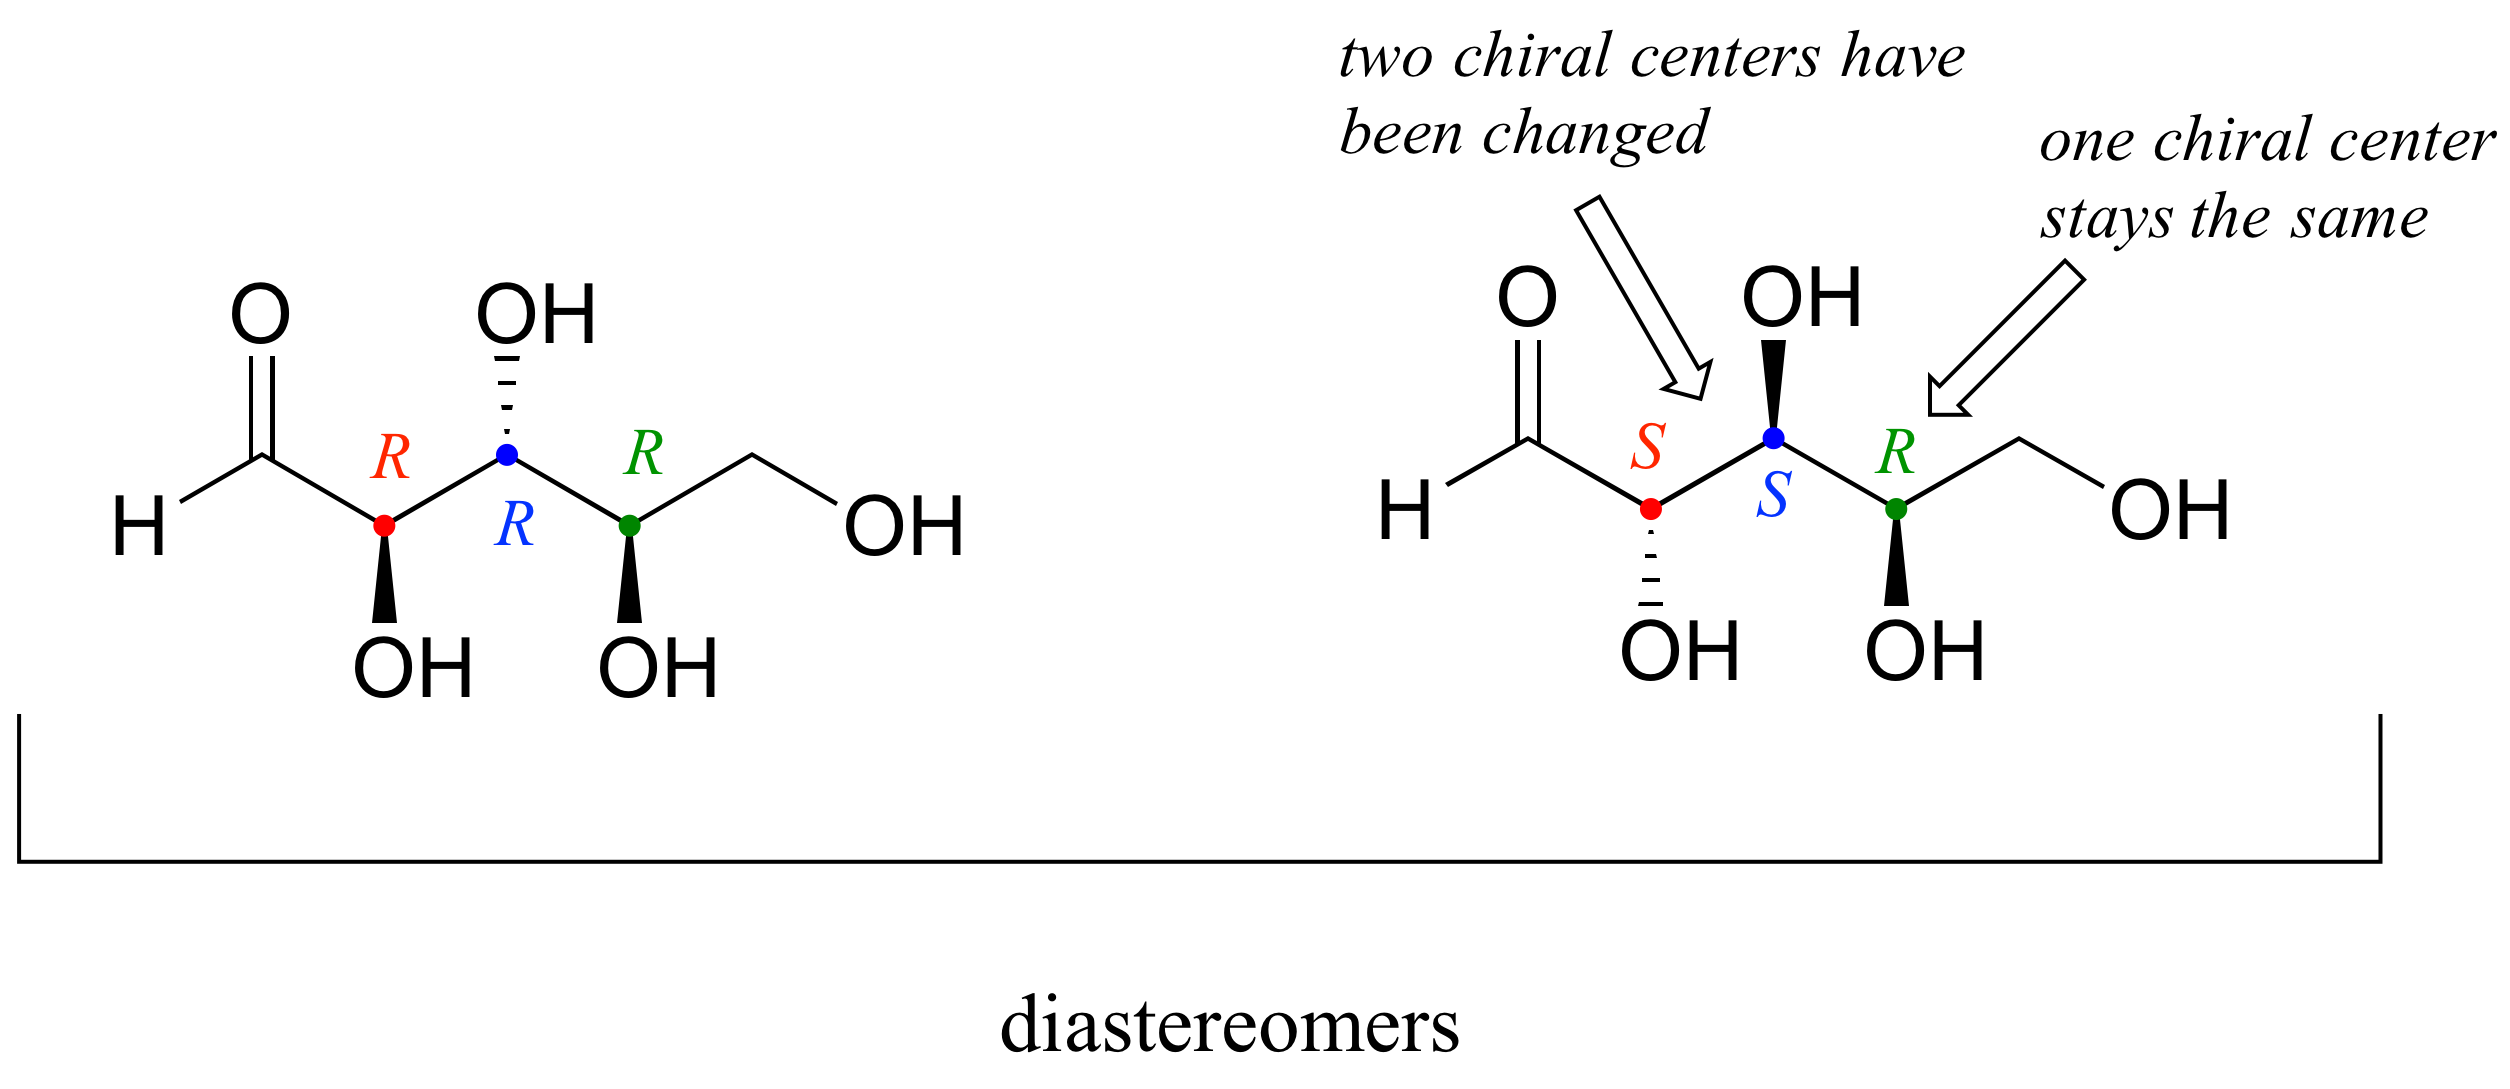 Diastereómeros de una molécula con tres centros quirales. Izquierda: configuración R R R. Derecha: Configuración S S R. Se han cambiado dos centros quirales y un centro quiral permanece igual.